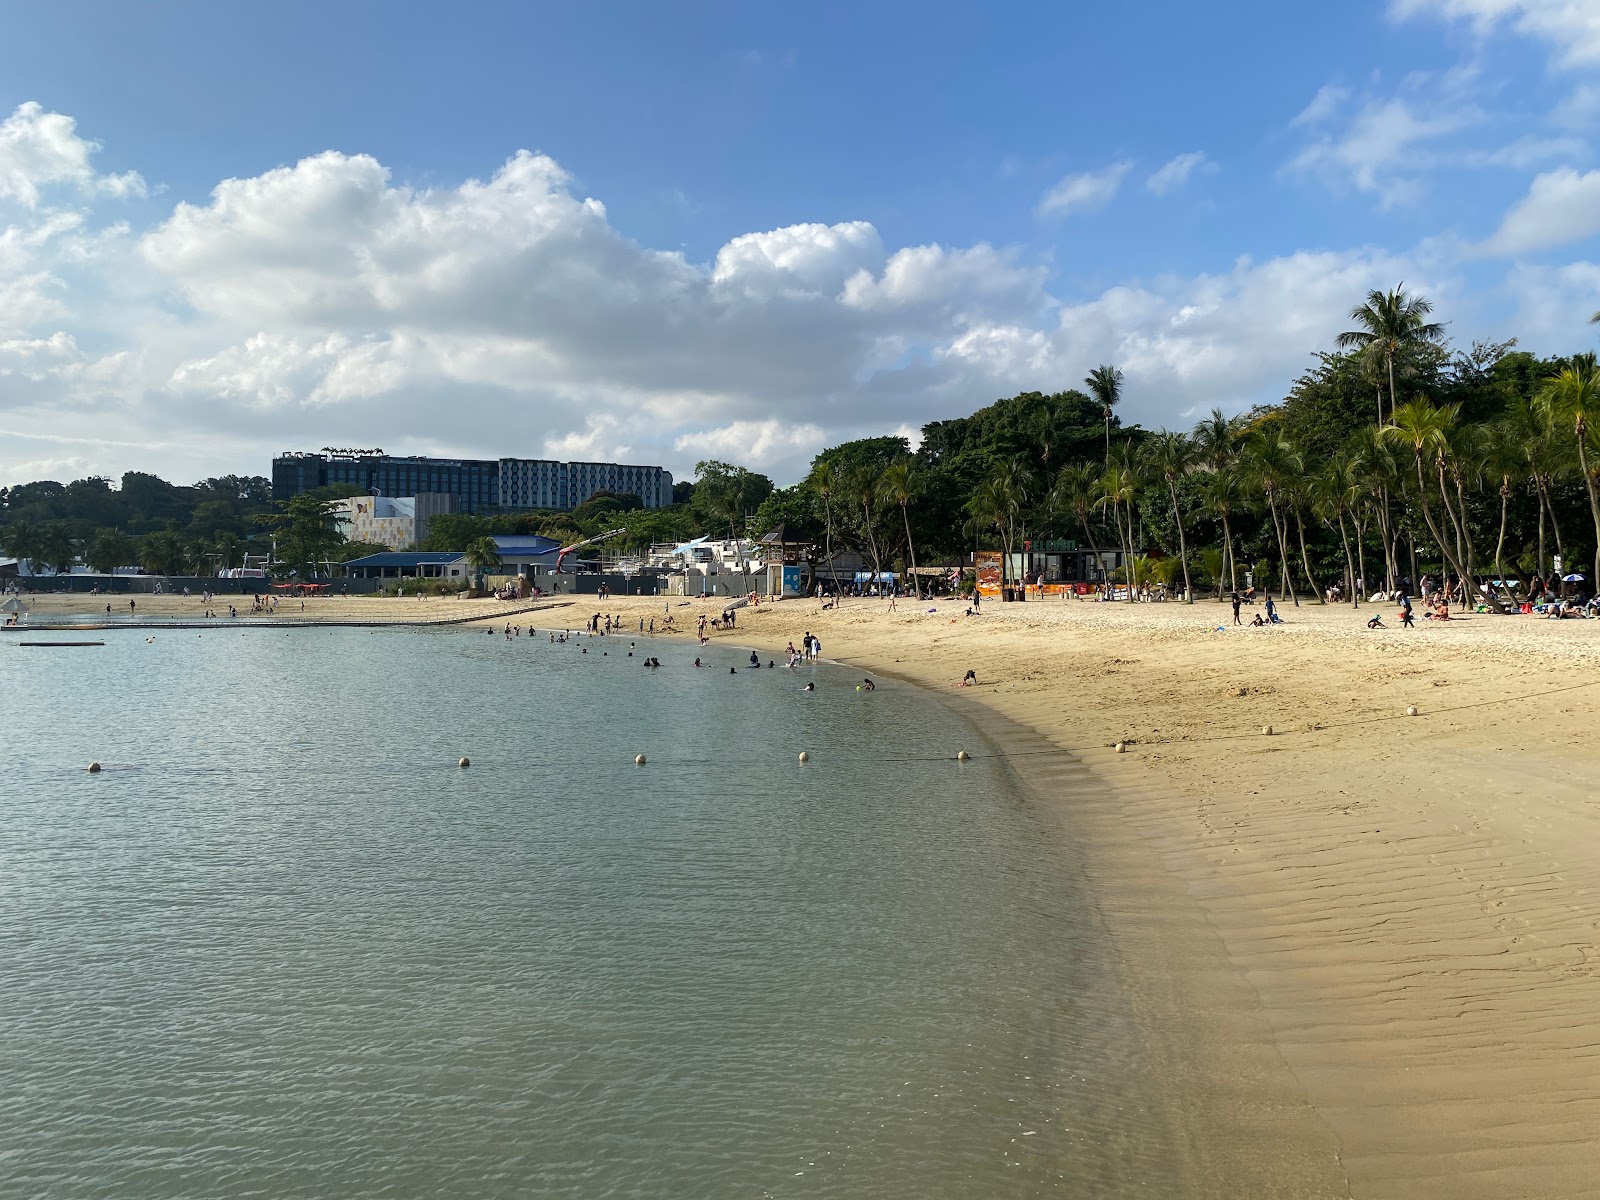 Palawan Beach'in fotoğrafı - rahatlamayı sevenler arasında popüler bir yer